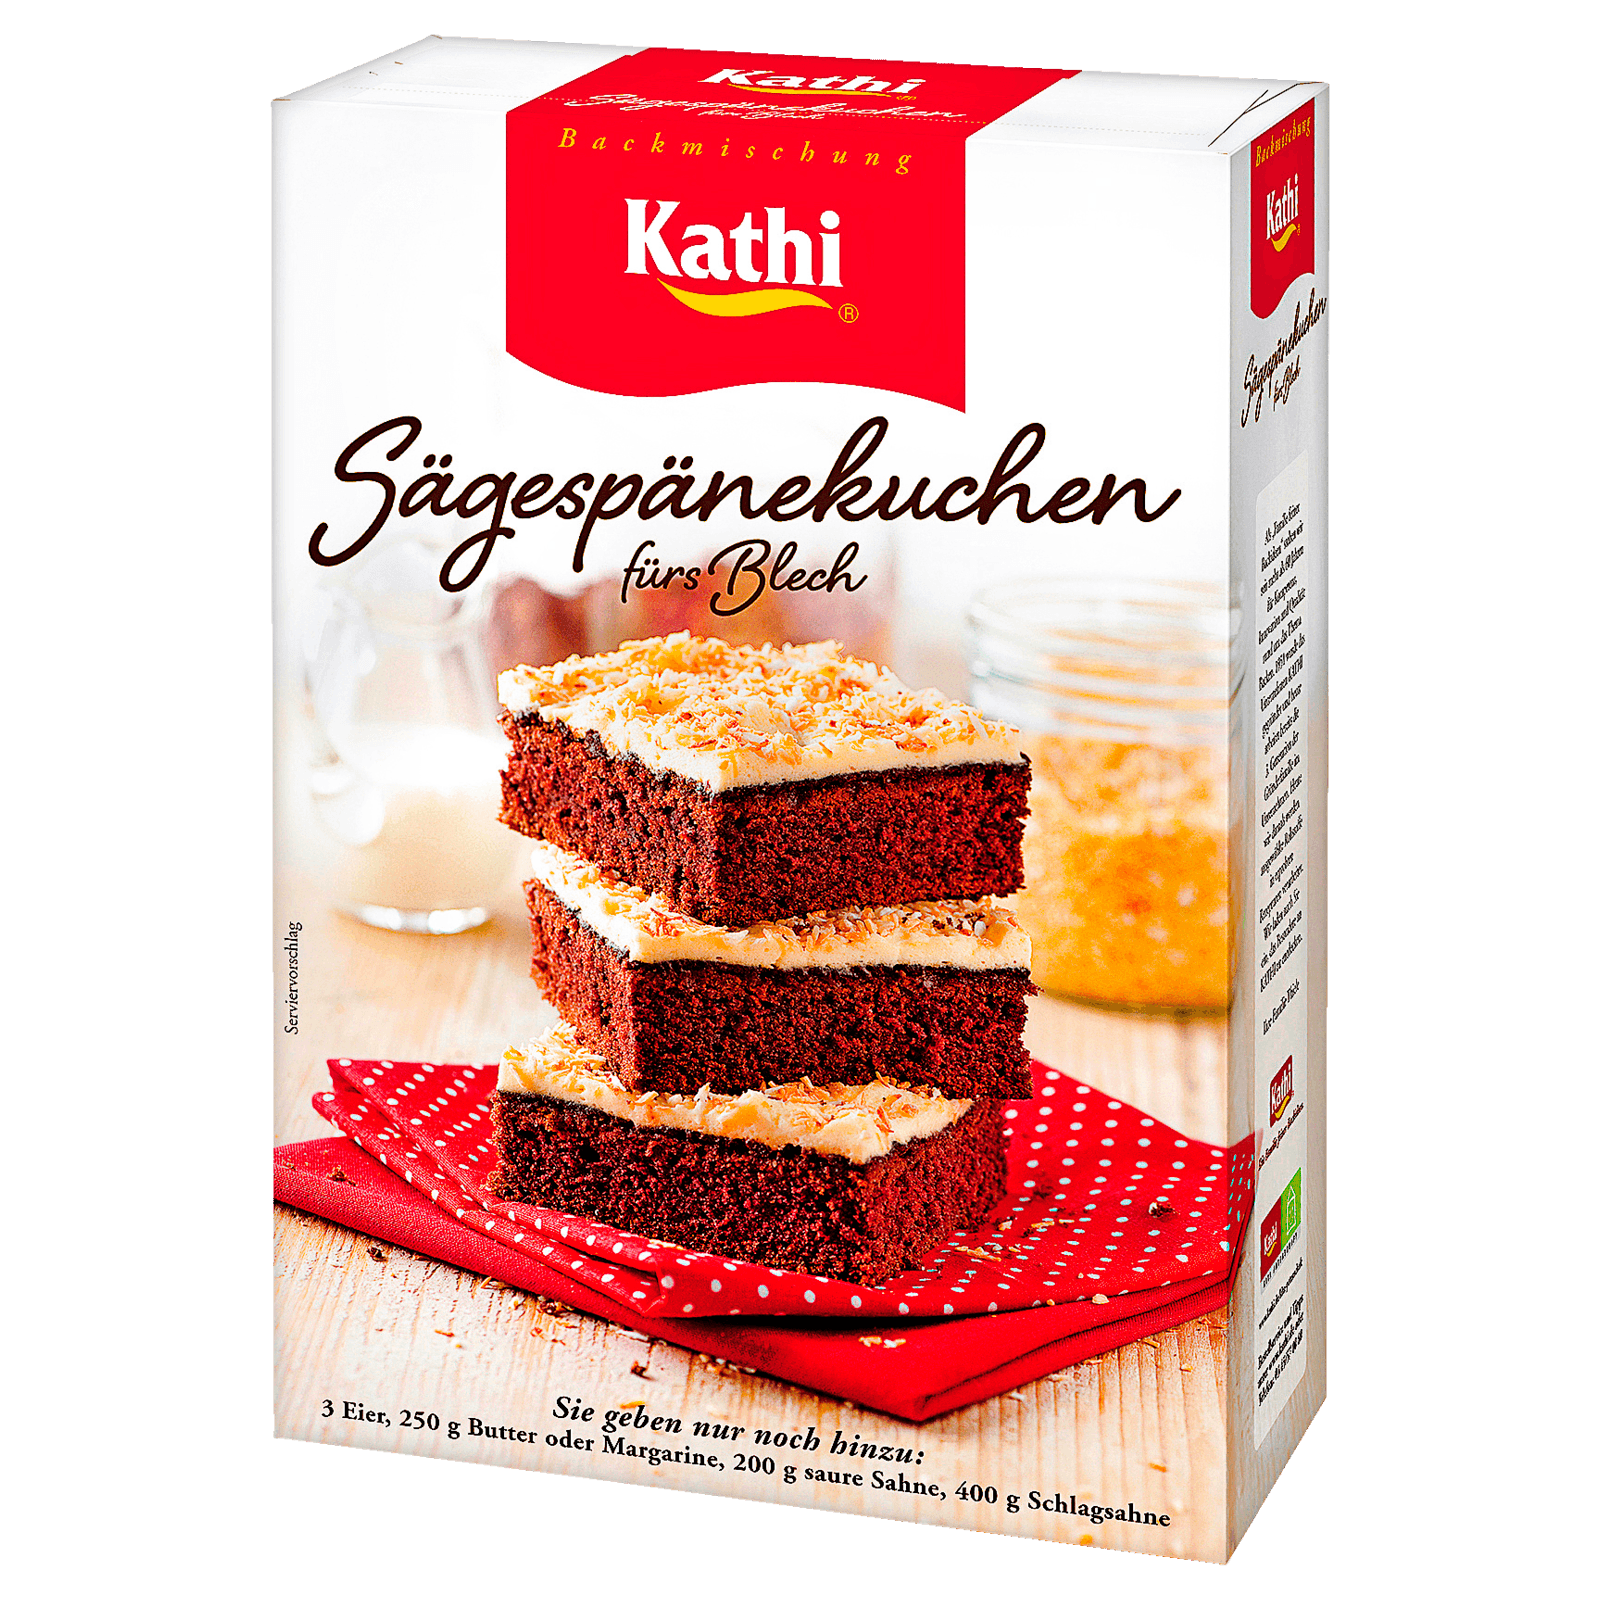 Kathi Sägespänekuchen 680g  für 3.29 EUR